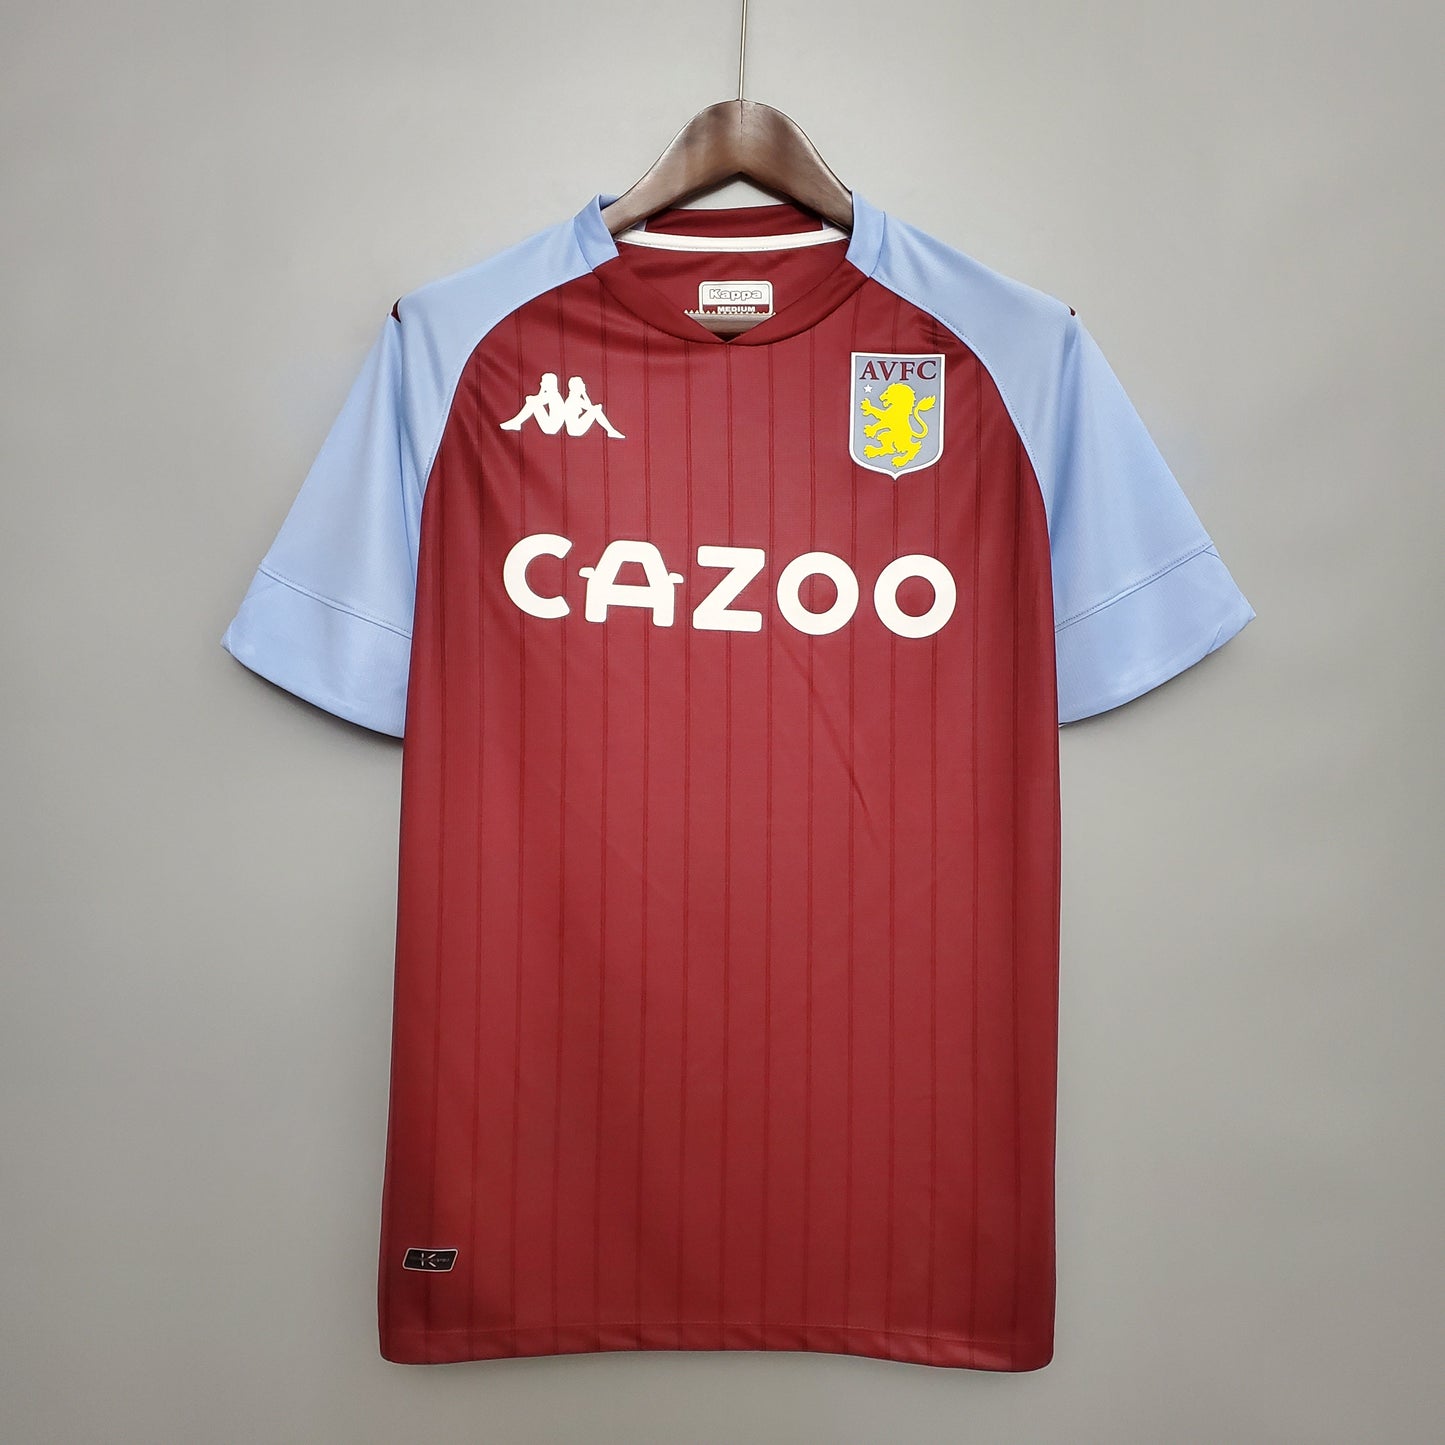 Aston Villa Home Kit 20/21